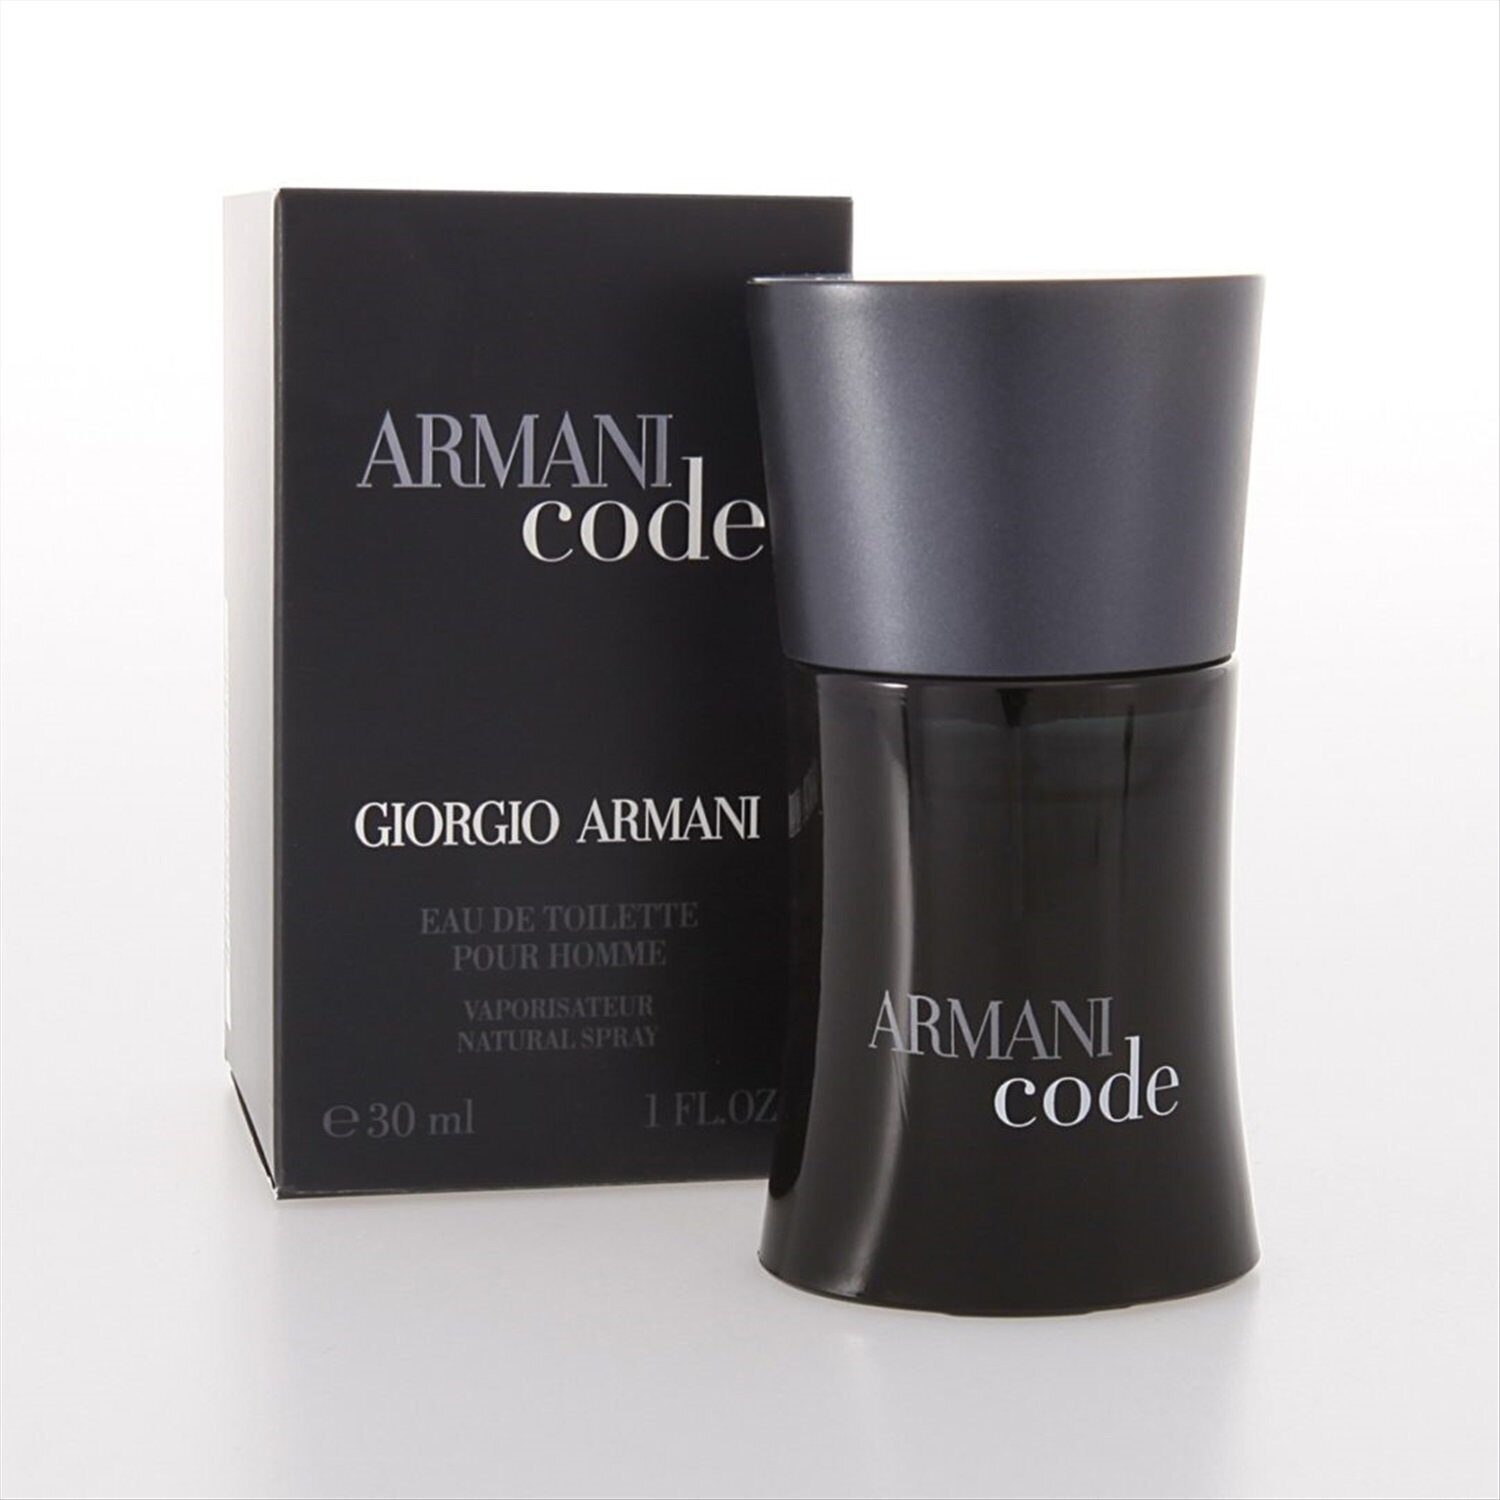 Code pour homme. Armani code (m) 30ml EDT. Armani Black code Giorgio Armani. Giorgio Armani туалетная вода Armani code homme. Giorgio Armani Armani code Eau de Toilette.